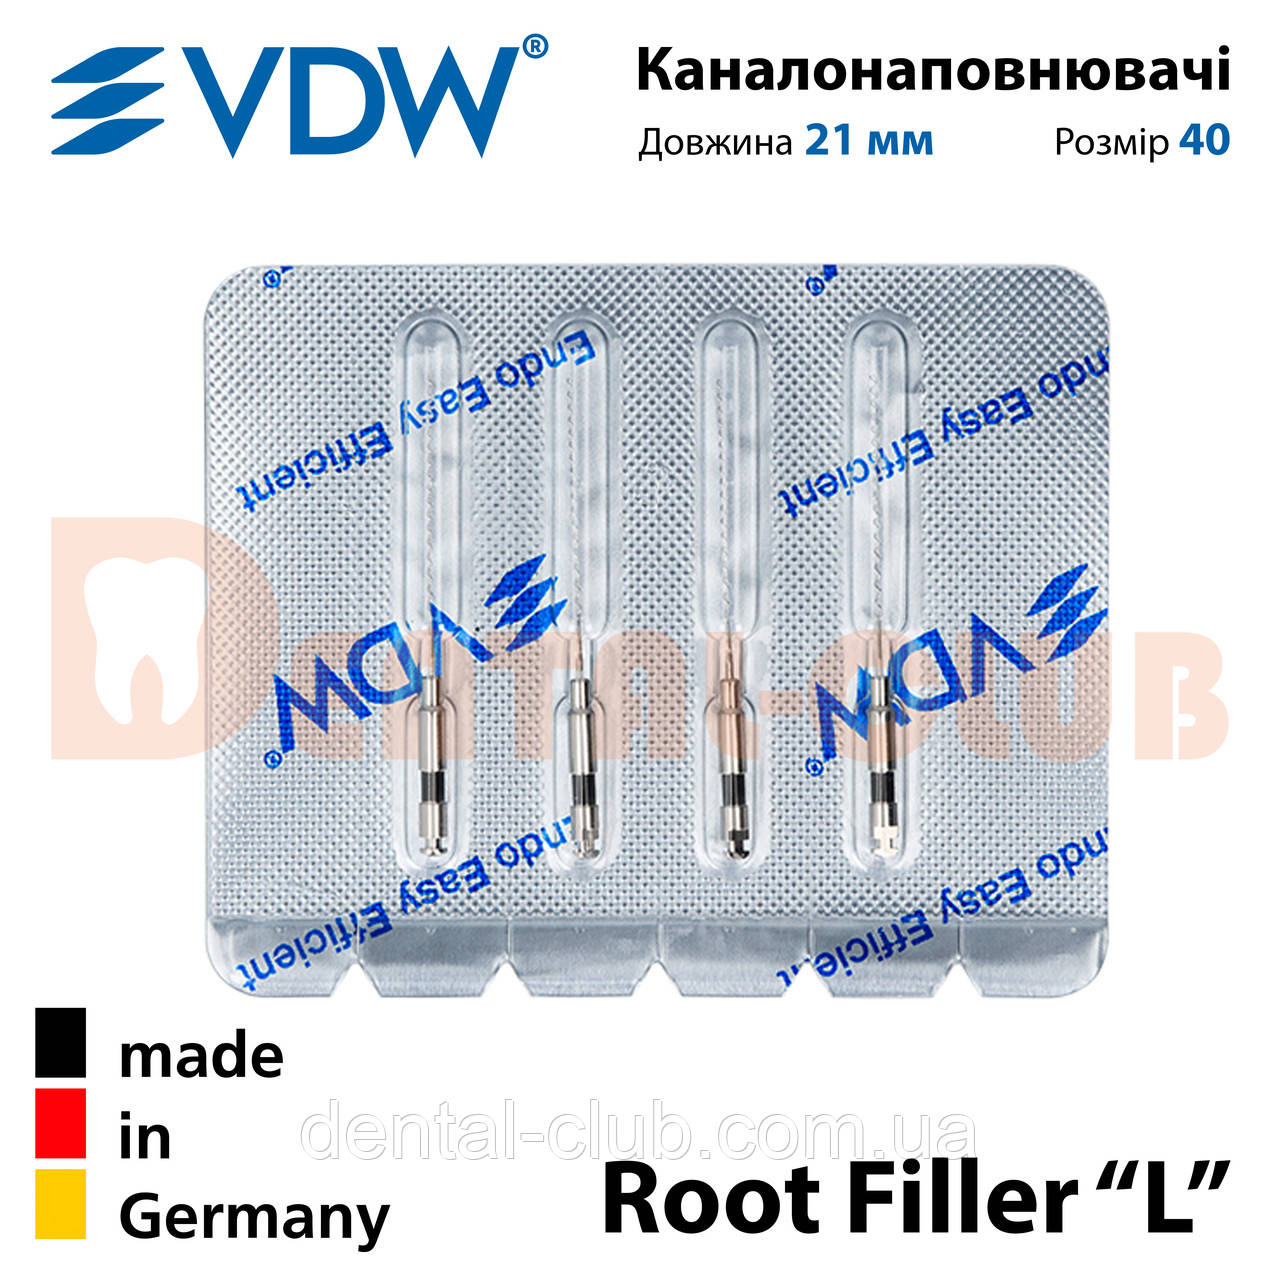 Каналонаповнювачі ВДВ, тип L - VDW Root Filler “L” - L 21 мм, ISO 40